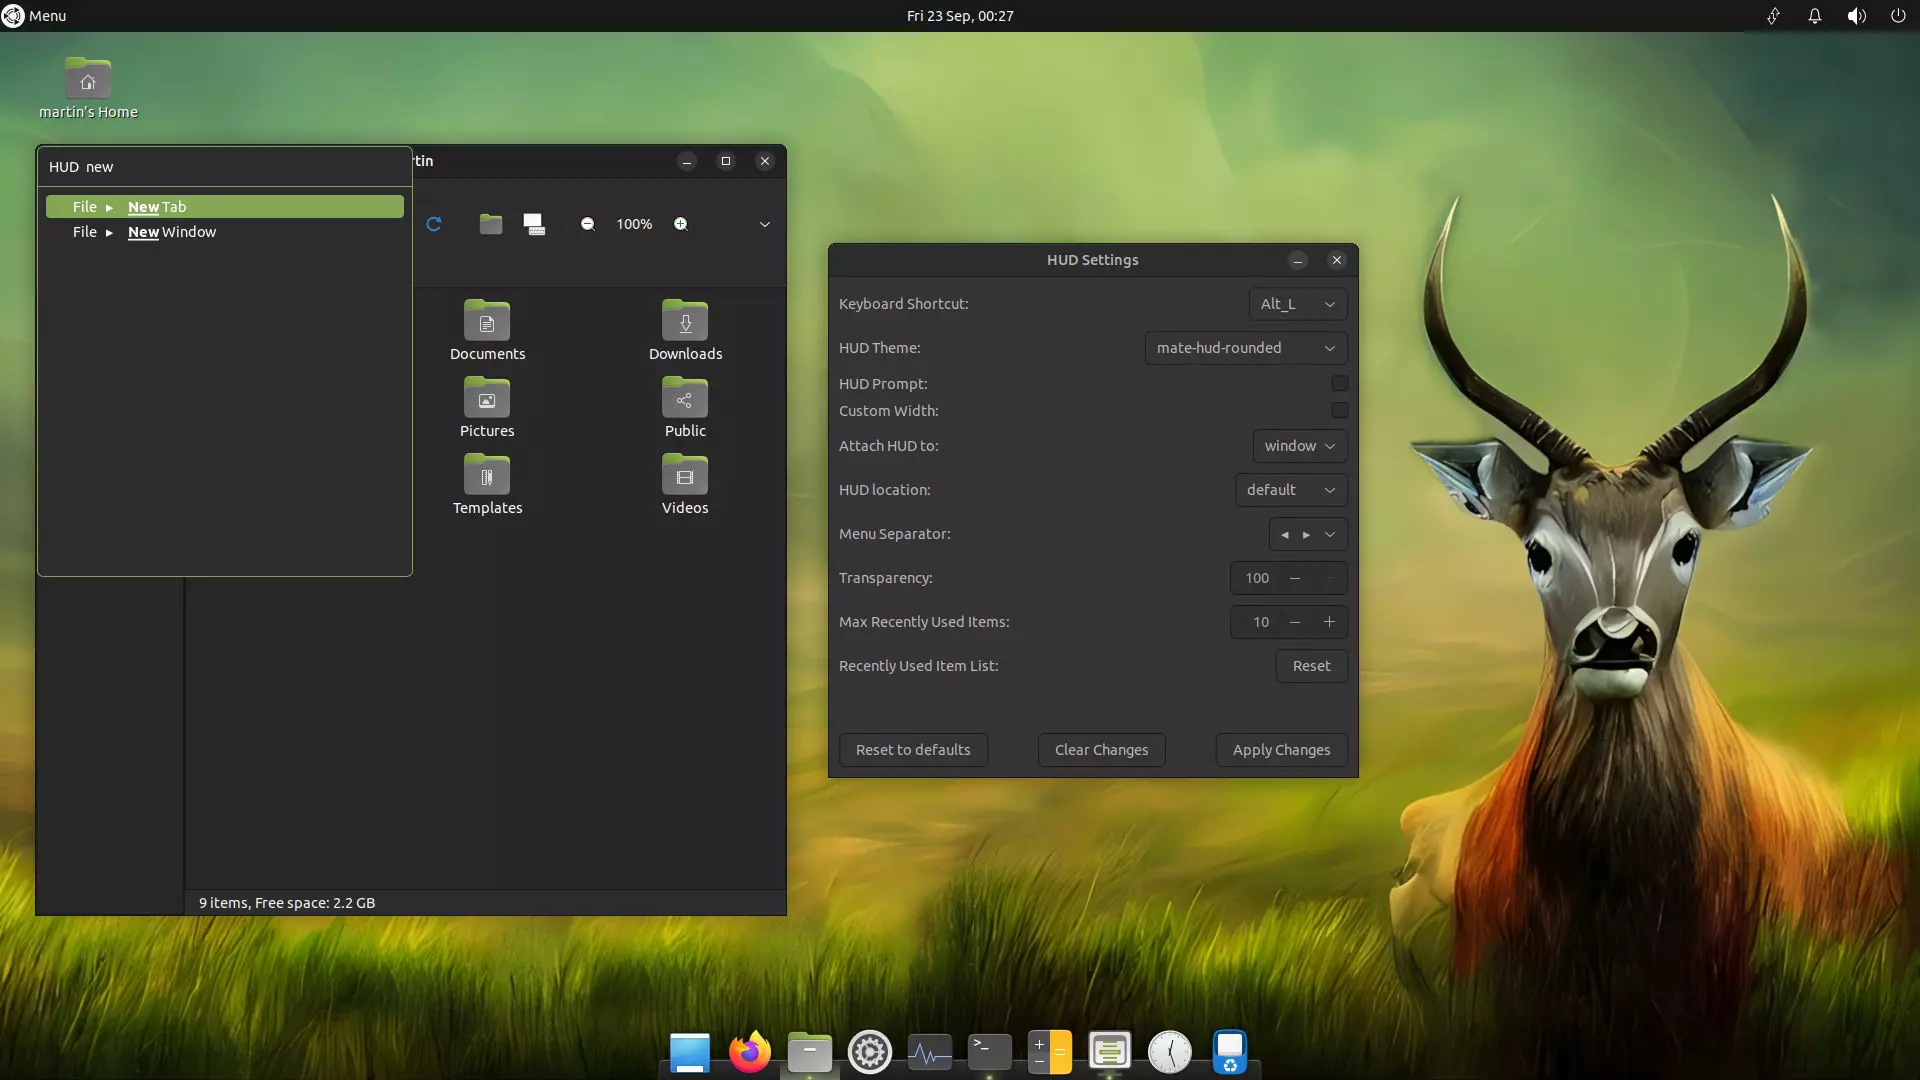 ubuntu mate 22.10 desktop